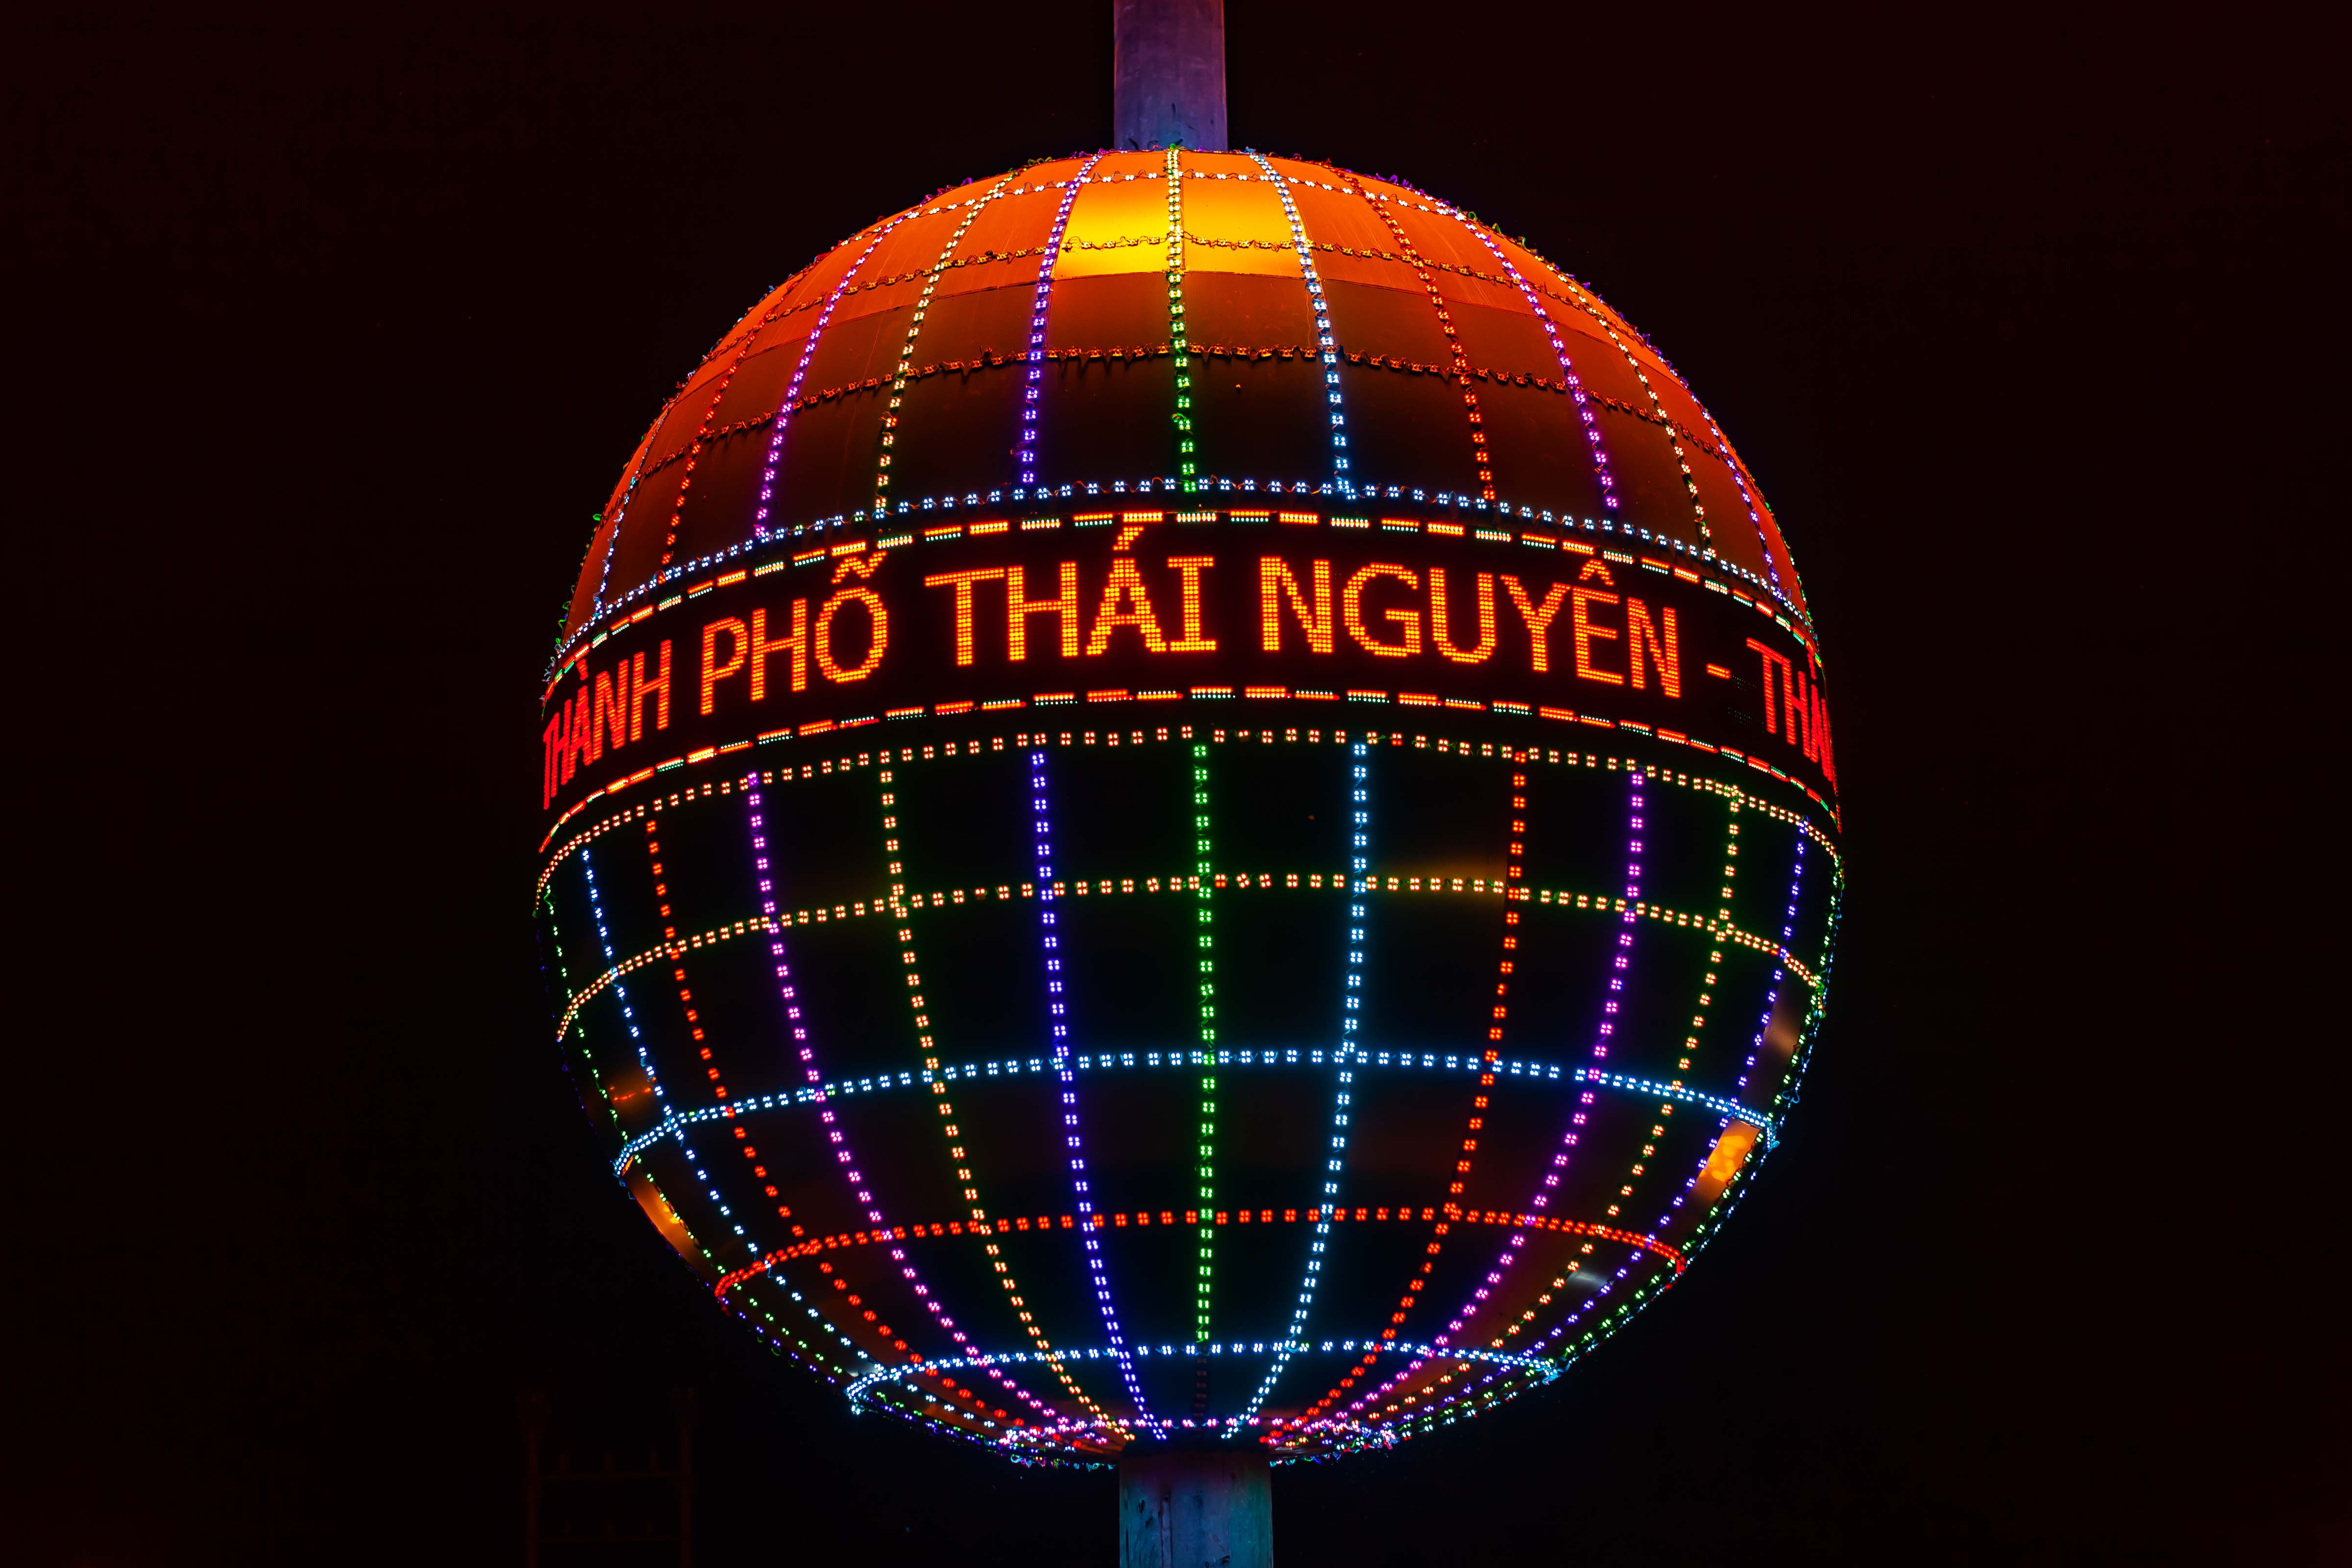 Vietnam, Thai Nguyen Prov, Globe, 2011, IMG 0321